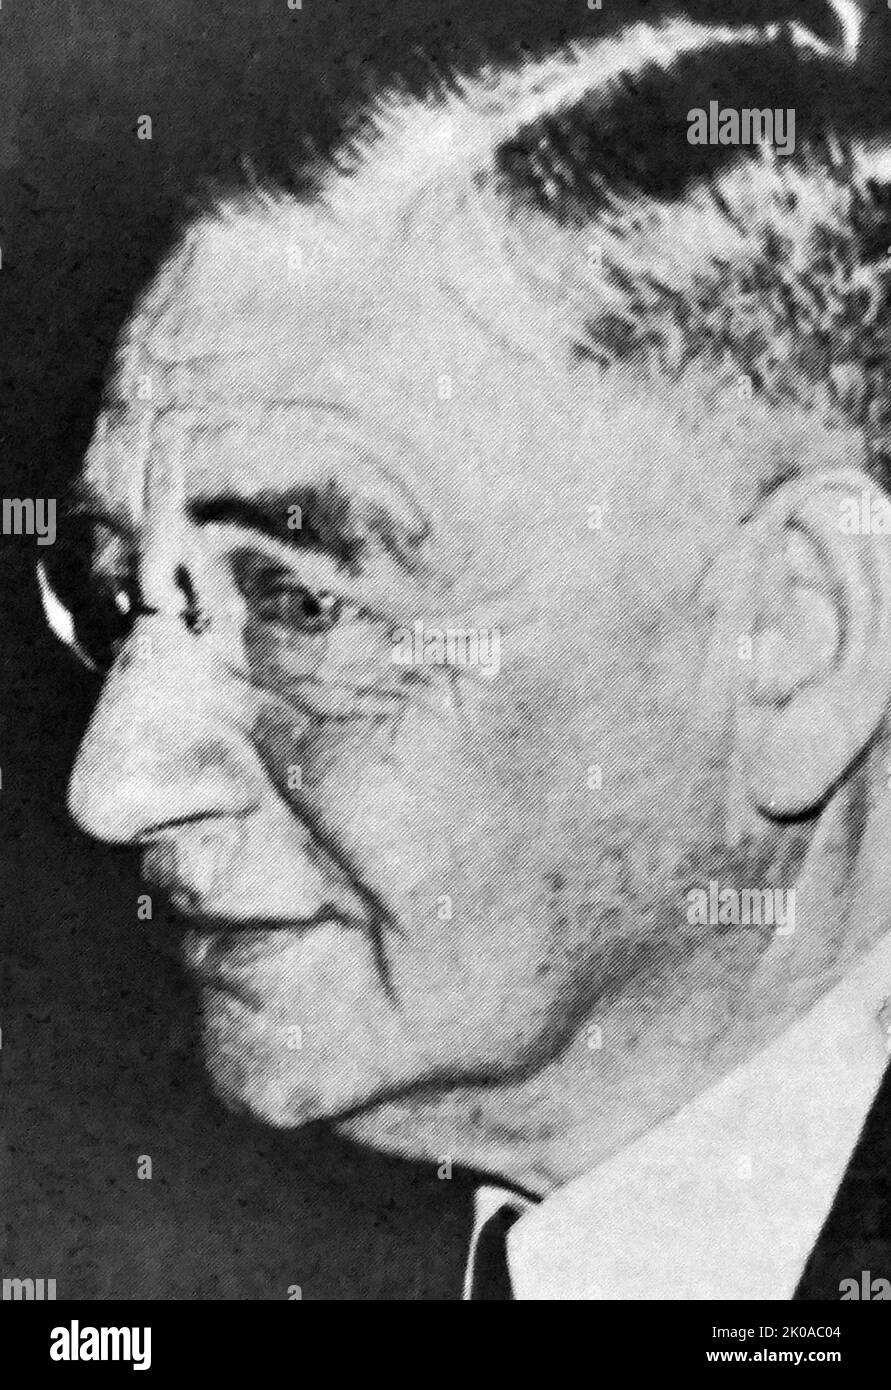 Otto Loewi (3. Juni 1873 - 25. Dezember 1961) war ein in Deutschland geborener Pharmakologe und Psychobiologe, der die Rolle von Acetylcholin als endogenen Neurotransmitter entdeckte. Für seine Entdeckung wurde er 1936 mit dem Nobelpreis für Physiologie oder Medizin ausgezeichnet Stockfoto